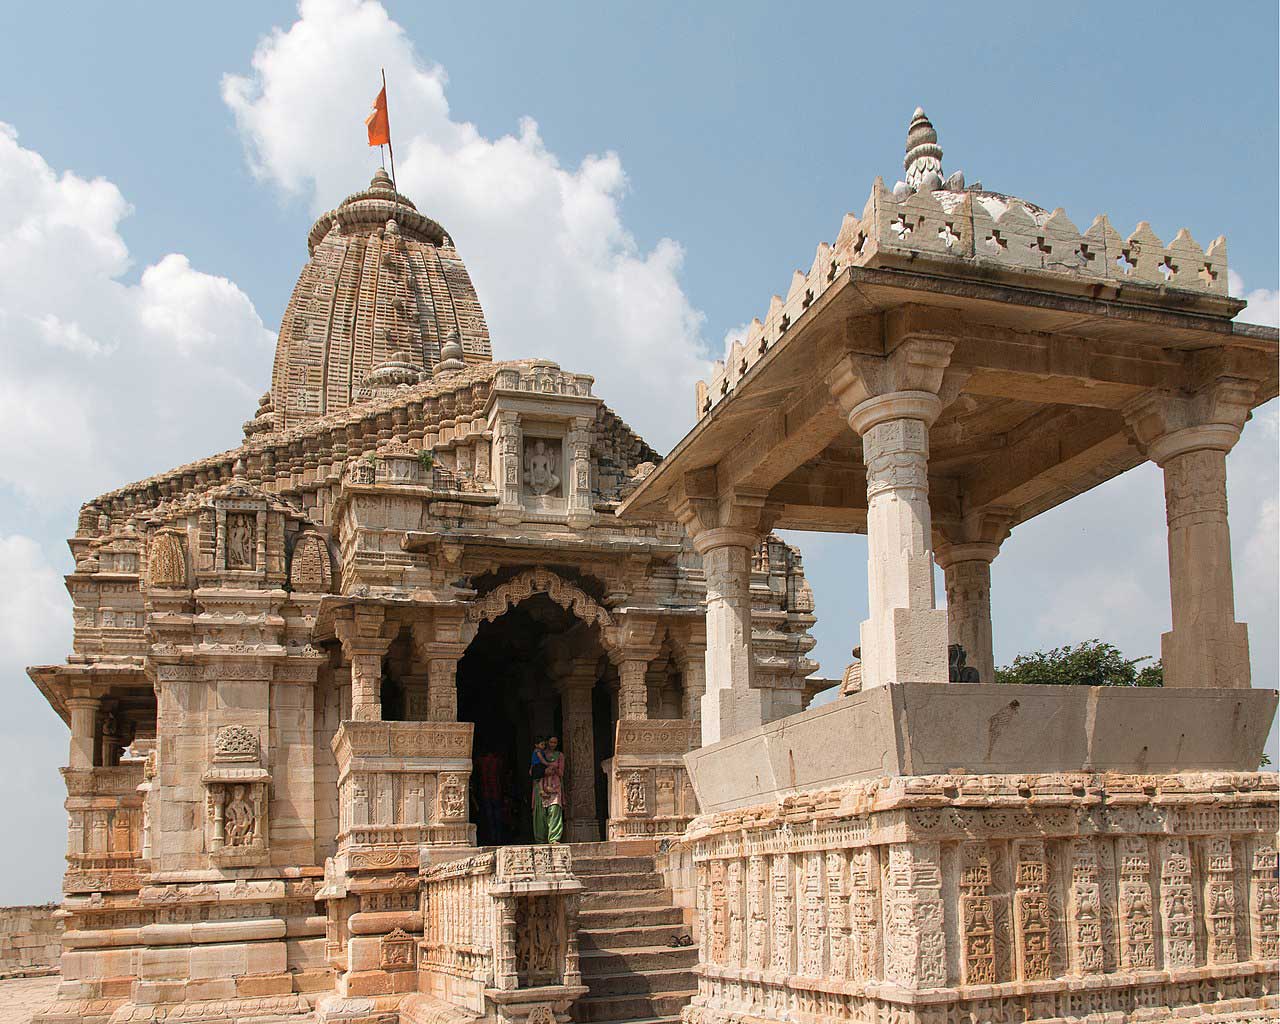 Kalika Mata Temple - Chittorgarh